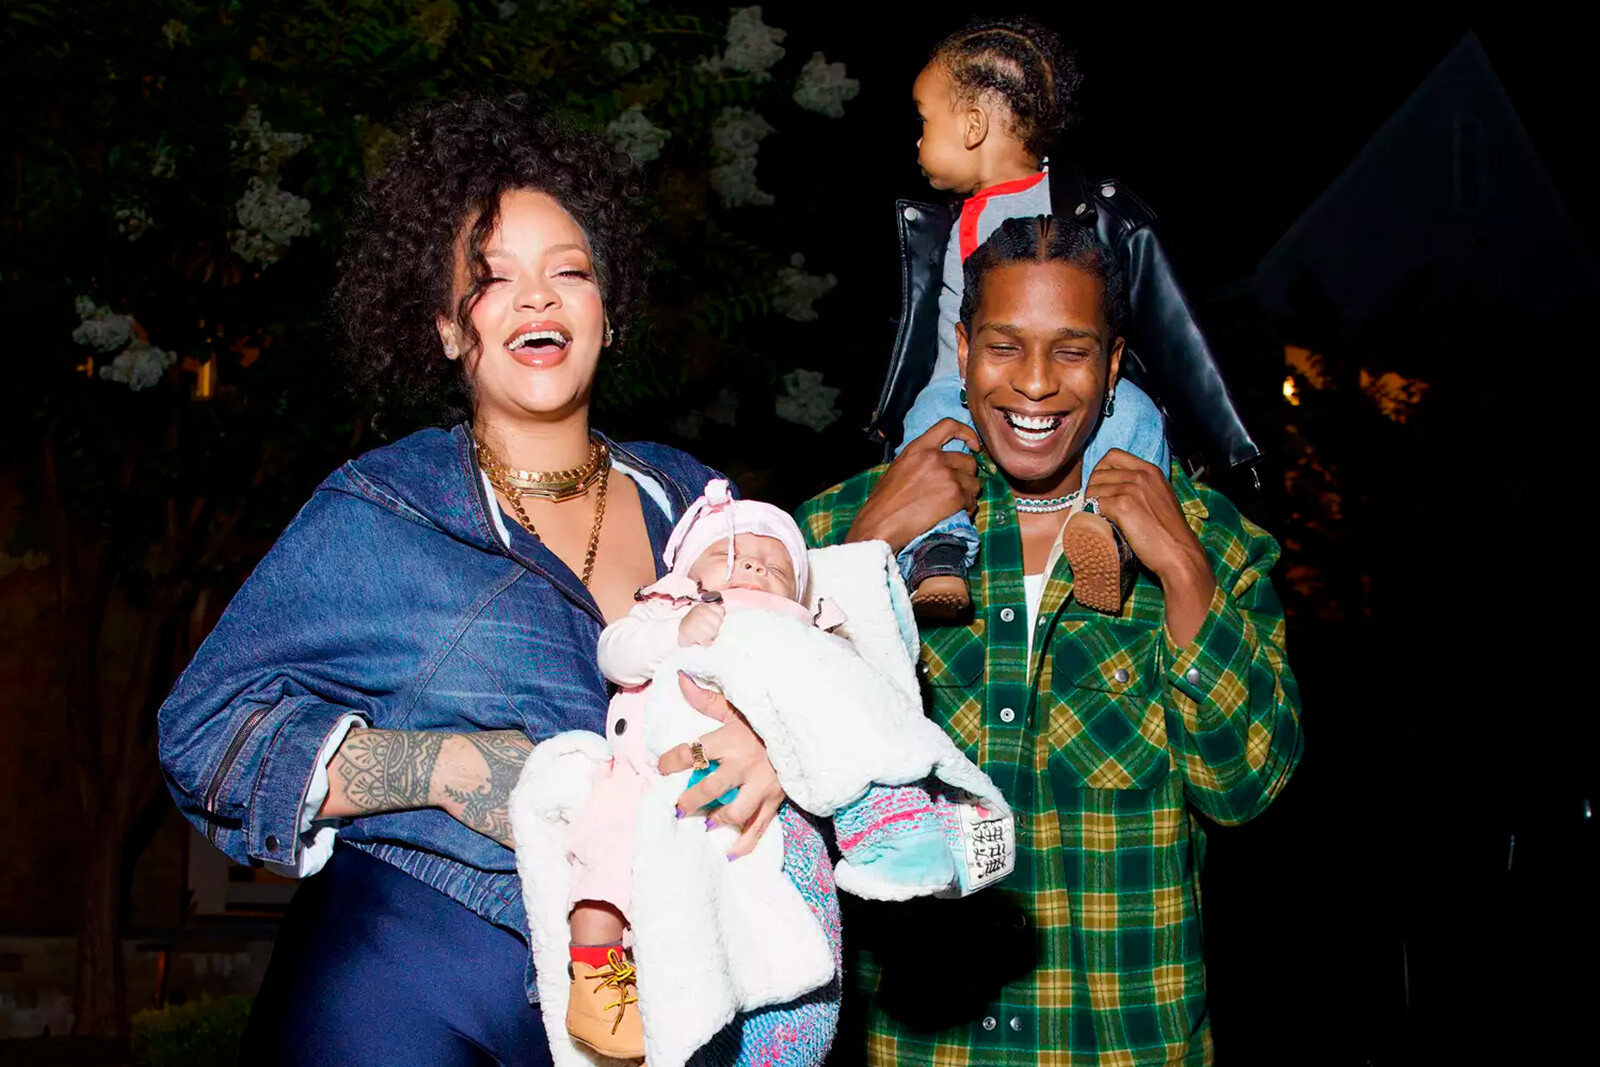 Рианна и A$AP Rocky поделились семейными фотографиями с новорождённым Риотом Роуз